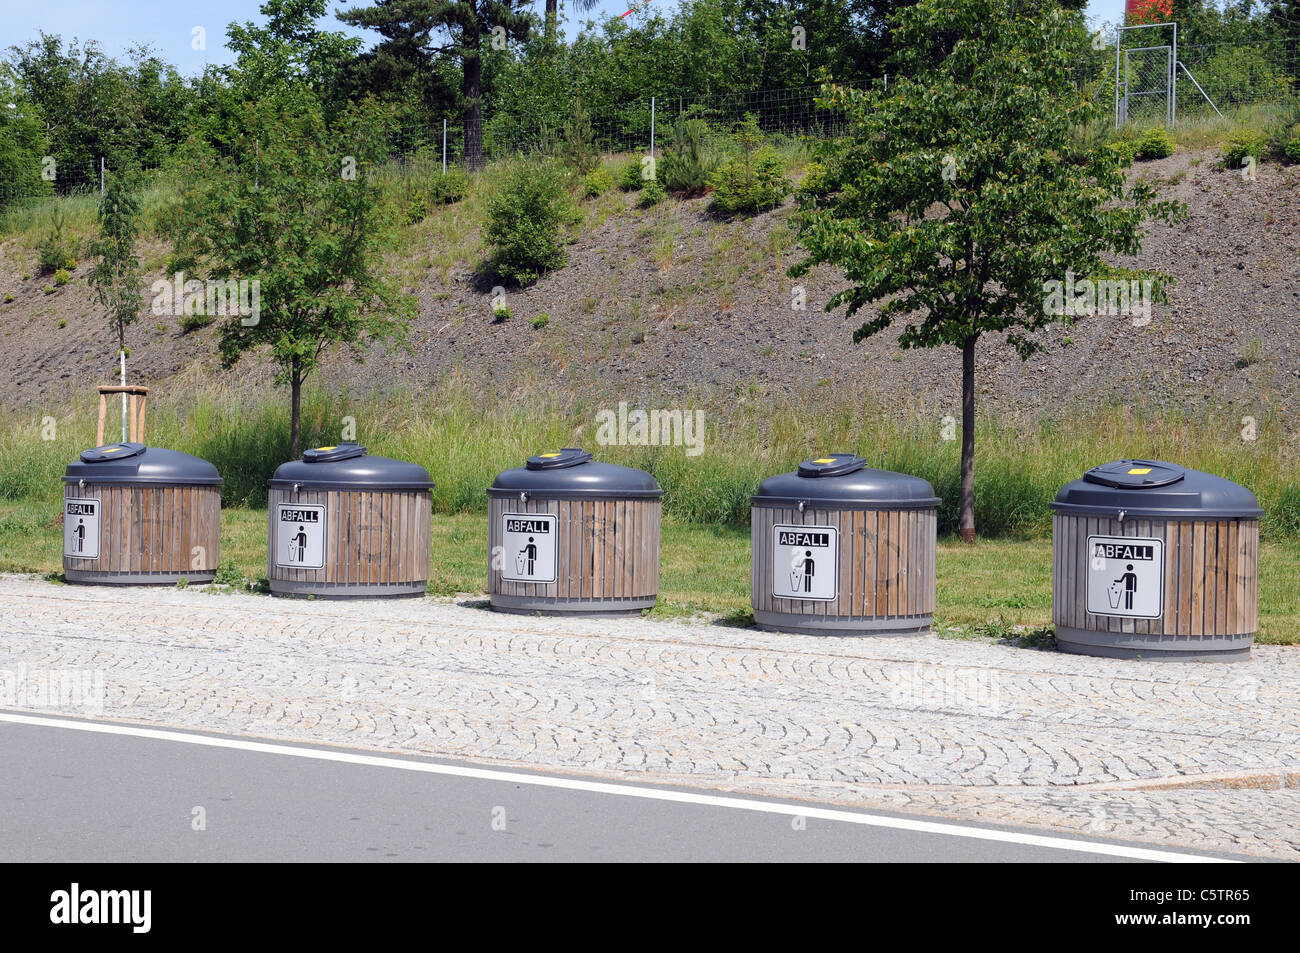 La gestión de los residuos en una Autobahn alemana Foto de stock